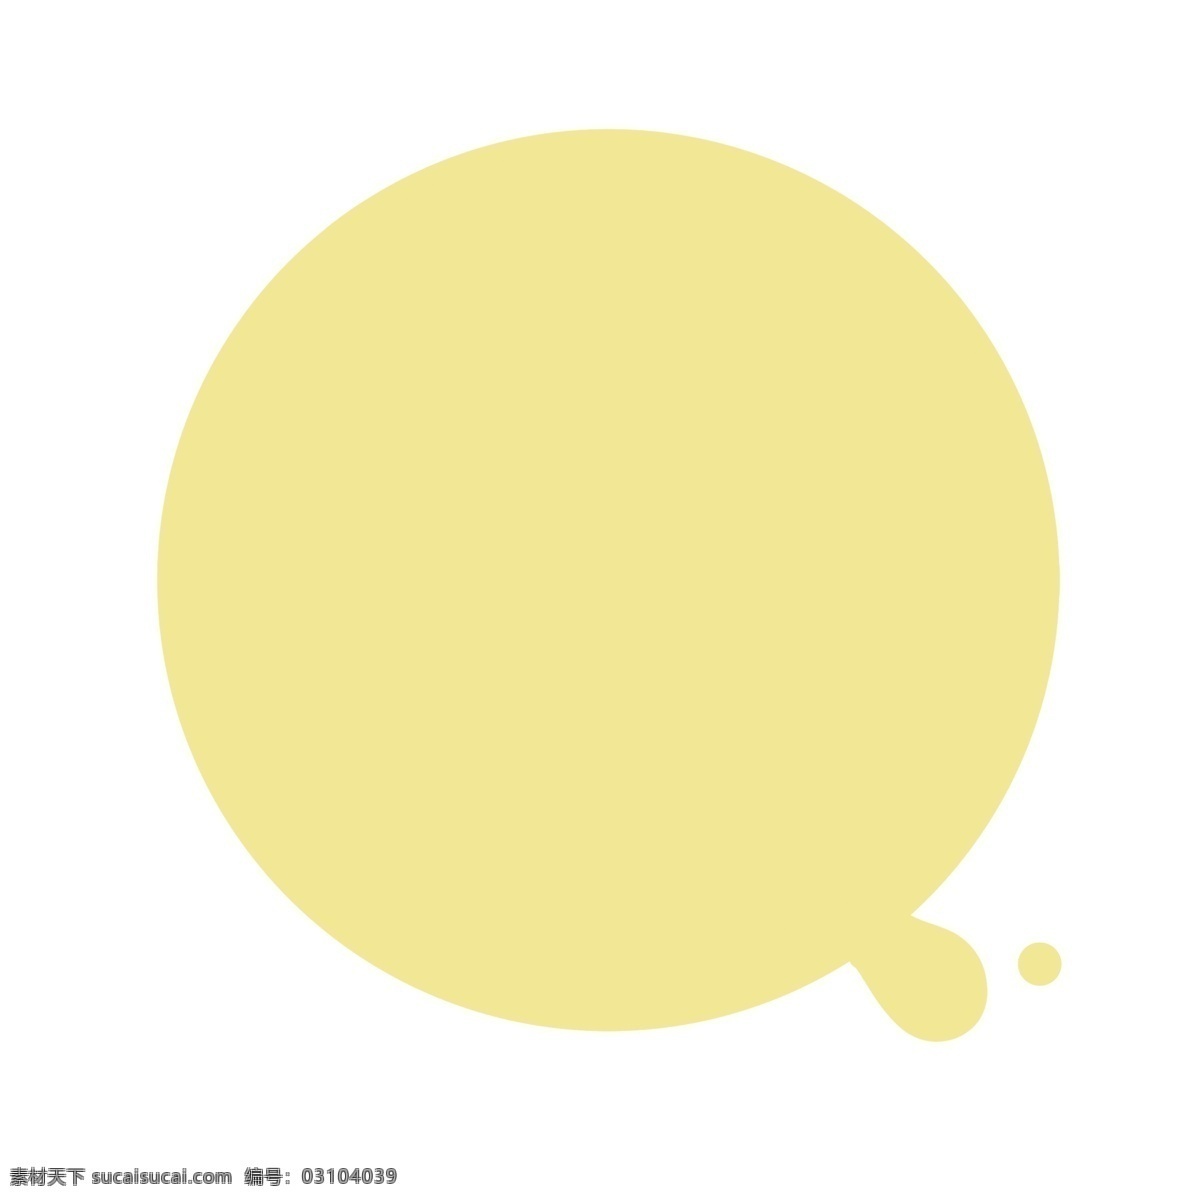 黄色 几何 圆圈 卡通 黄色圆圈 几何圆圈 扁平圆圈 清新圆圈 对话框 清新 扁平 花色 黄色卡通圆圈